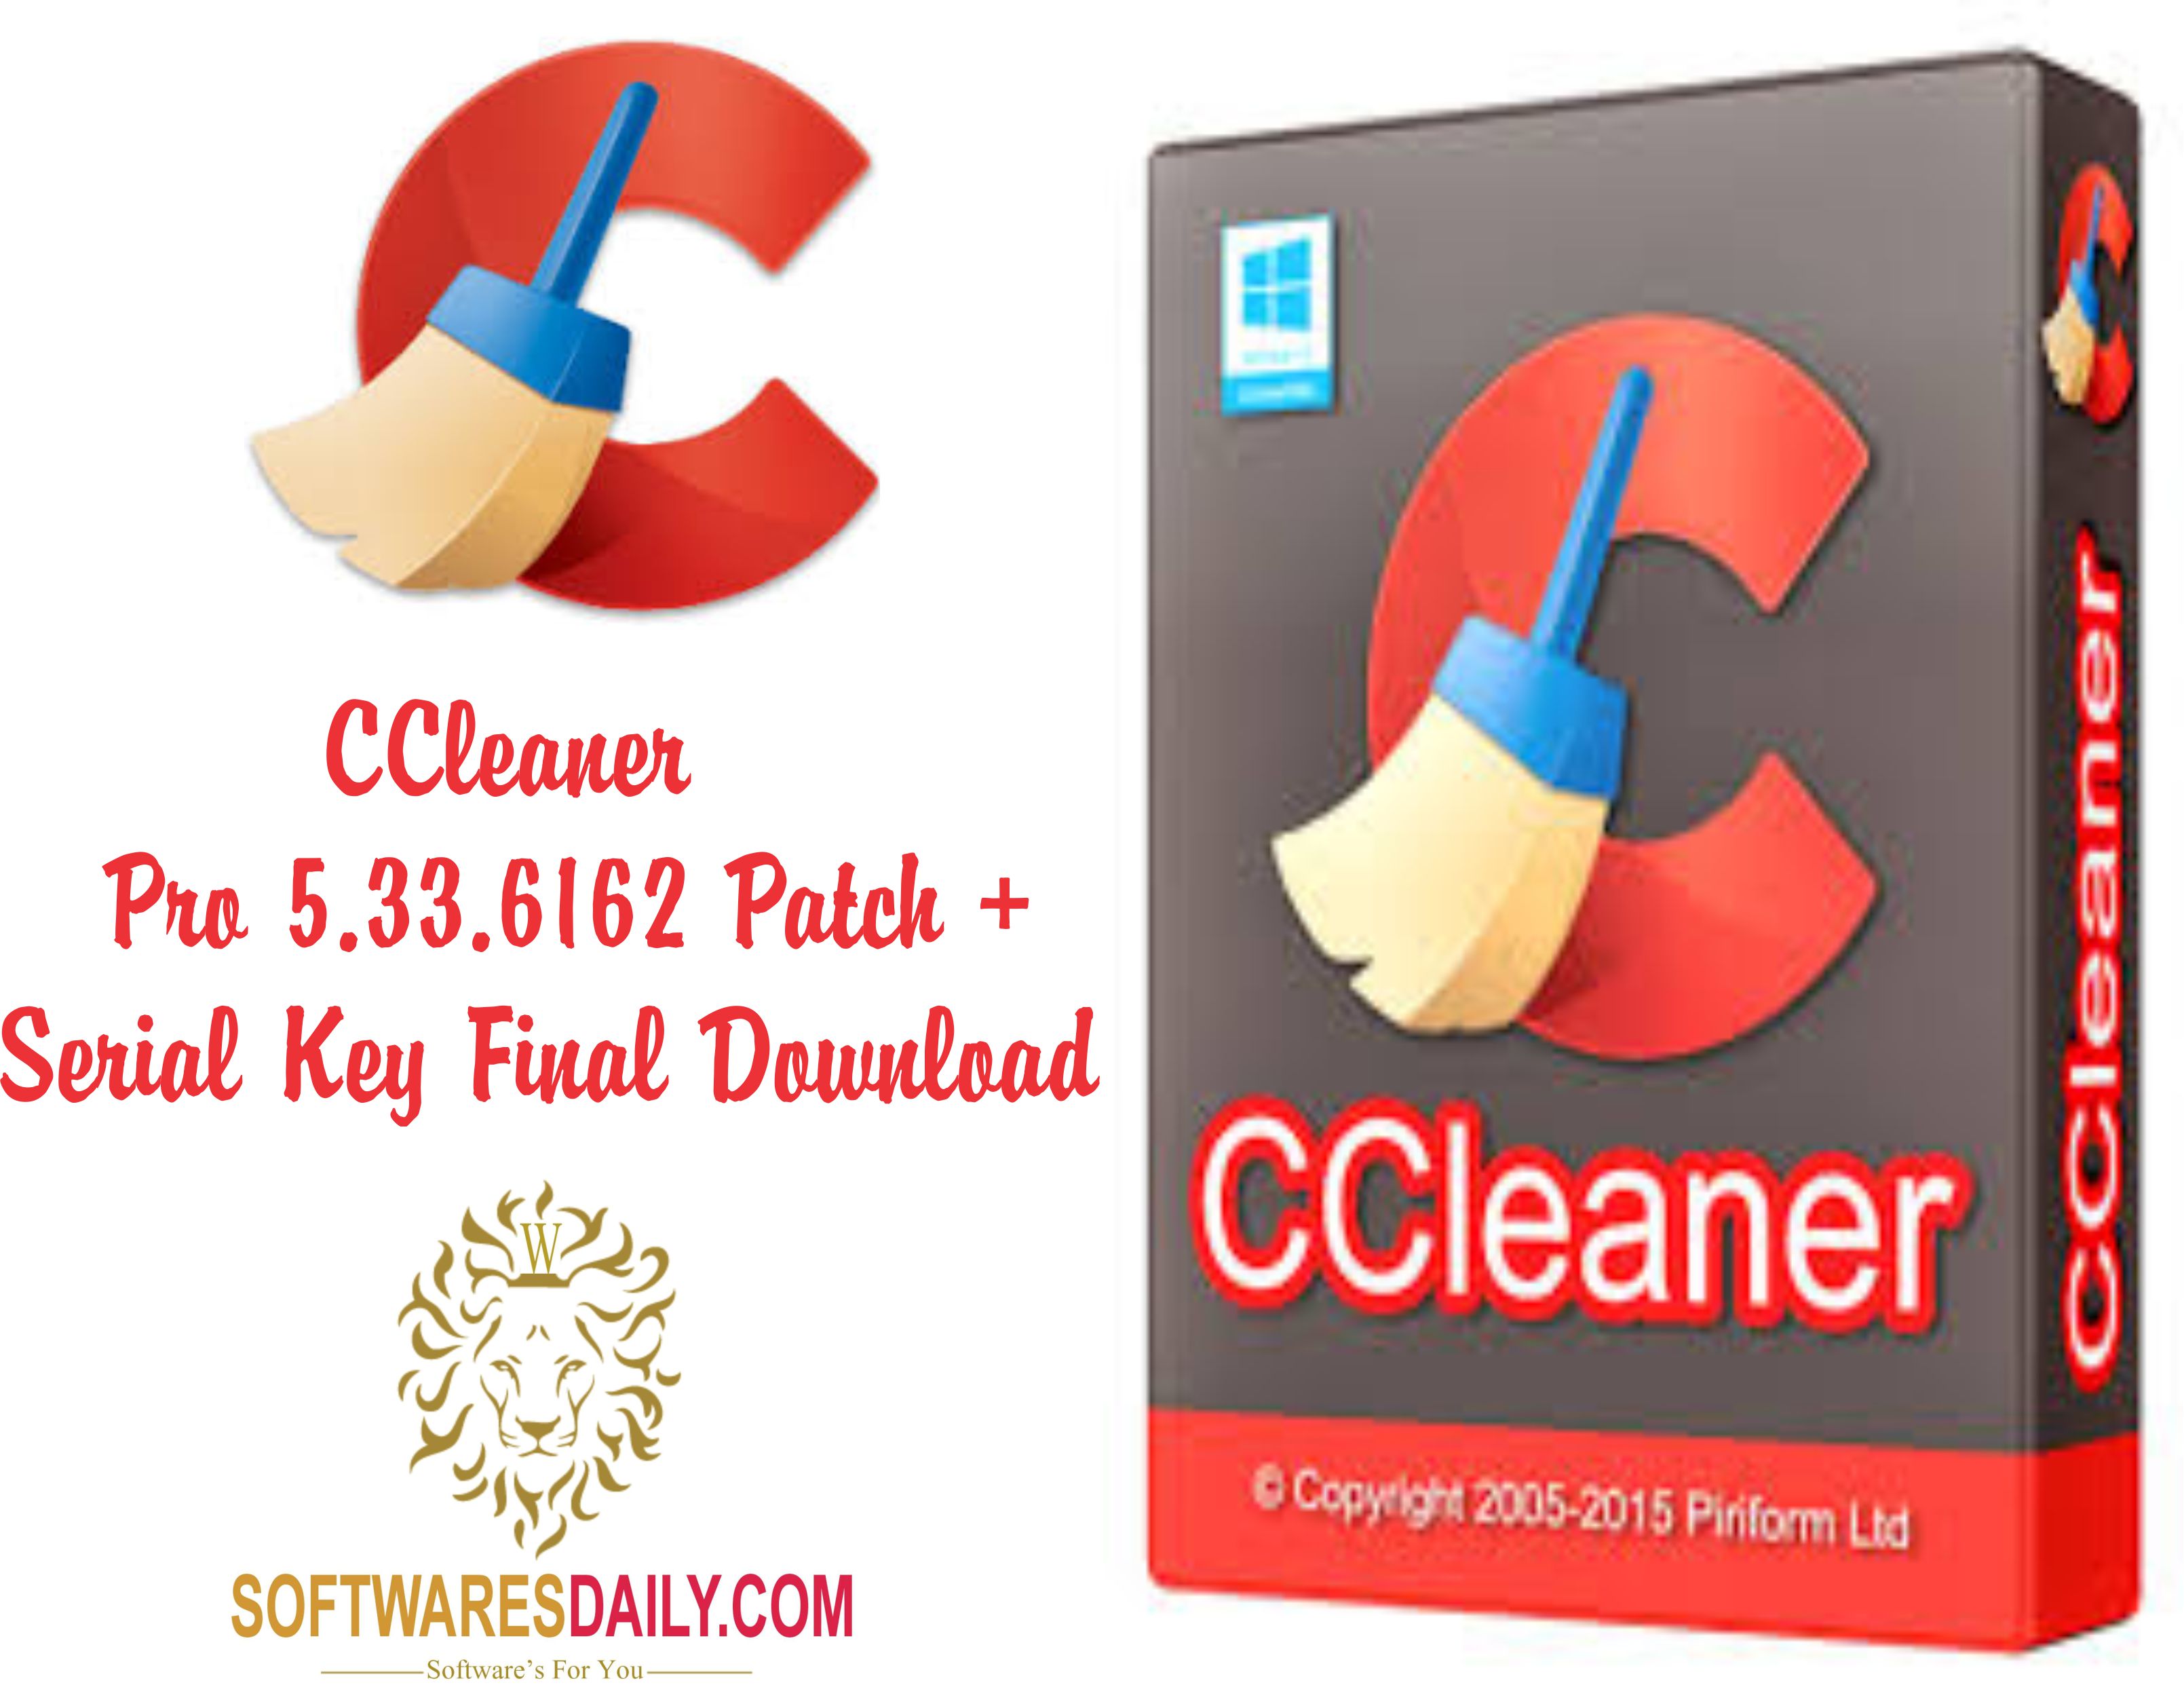 ccleaner v5 33.6162 download